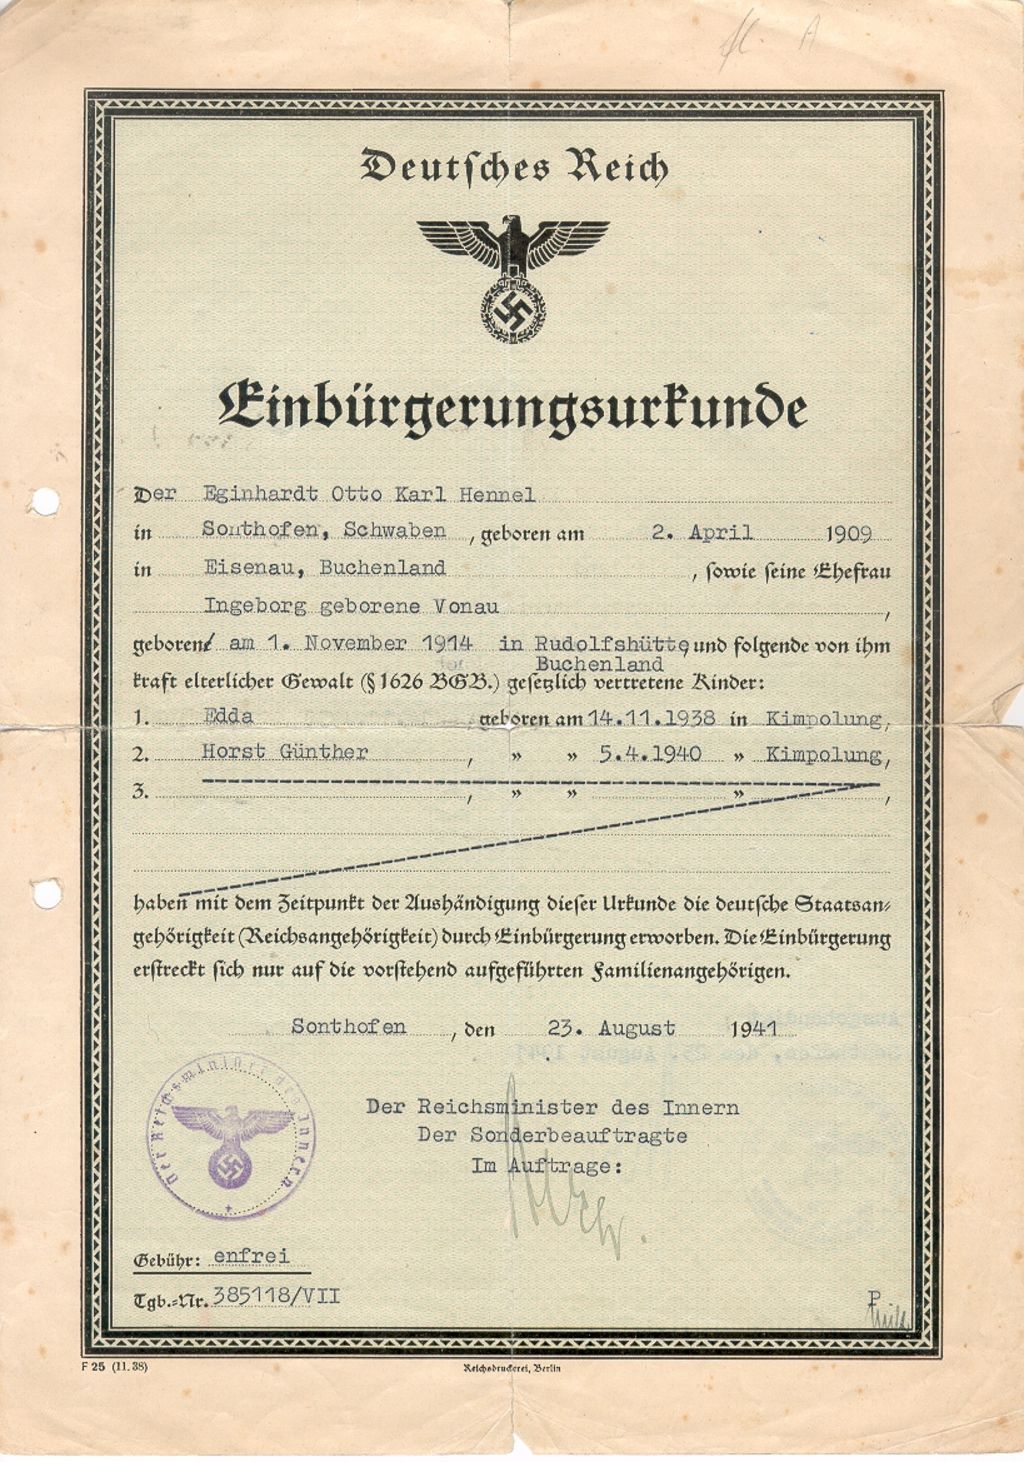 Exponat: Einbürgerungsurkunde für die deutschstämmige Familie Hennel aus der Nordbukowina, 1941